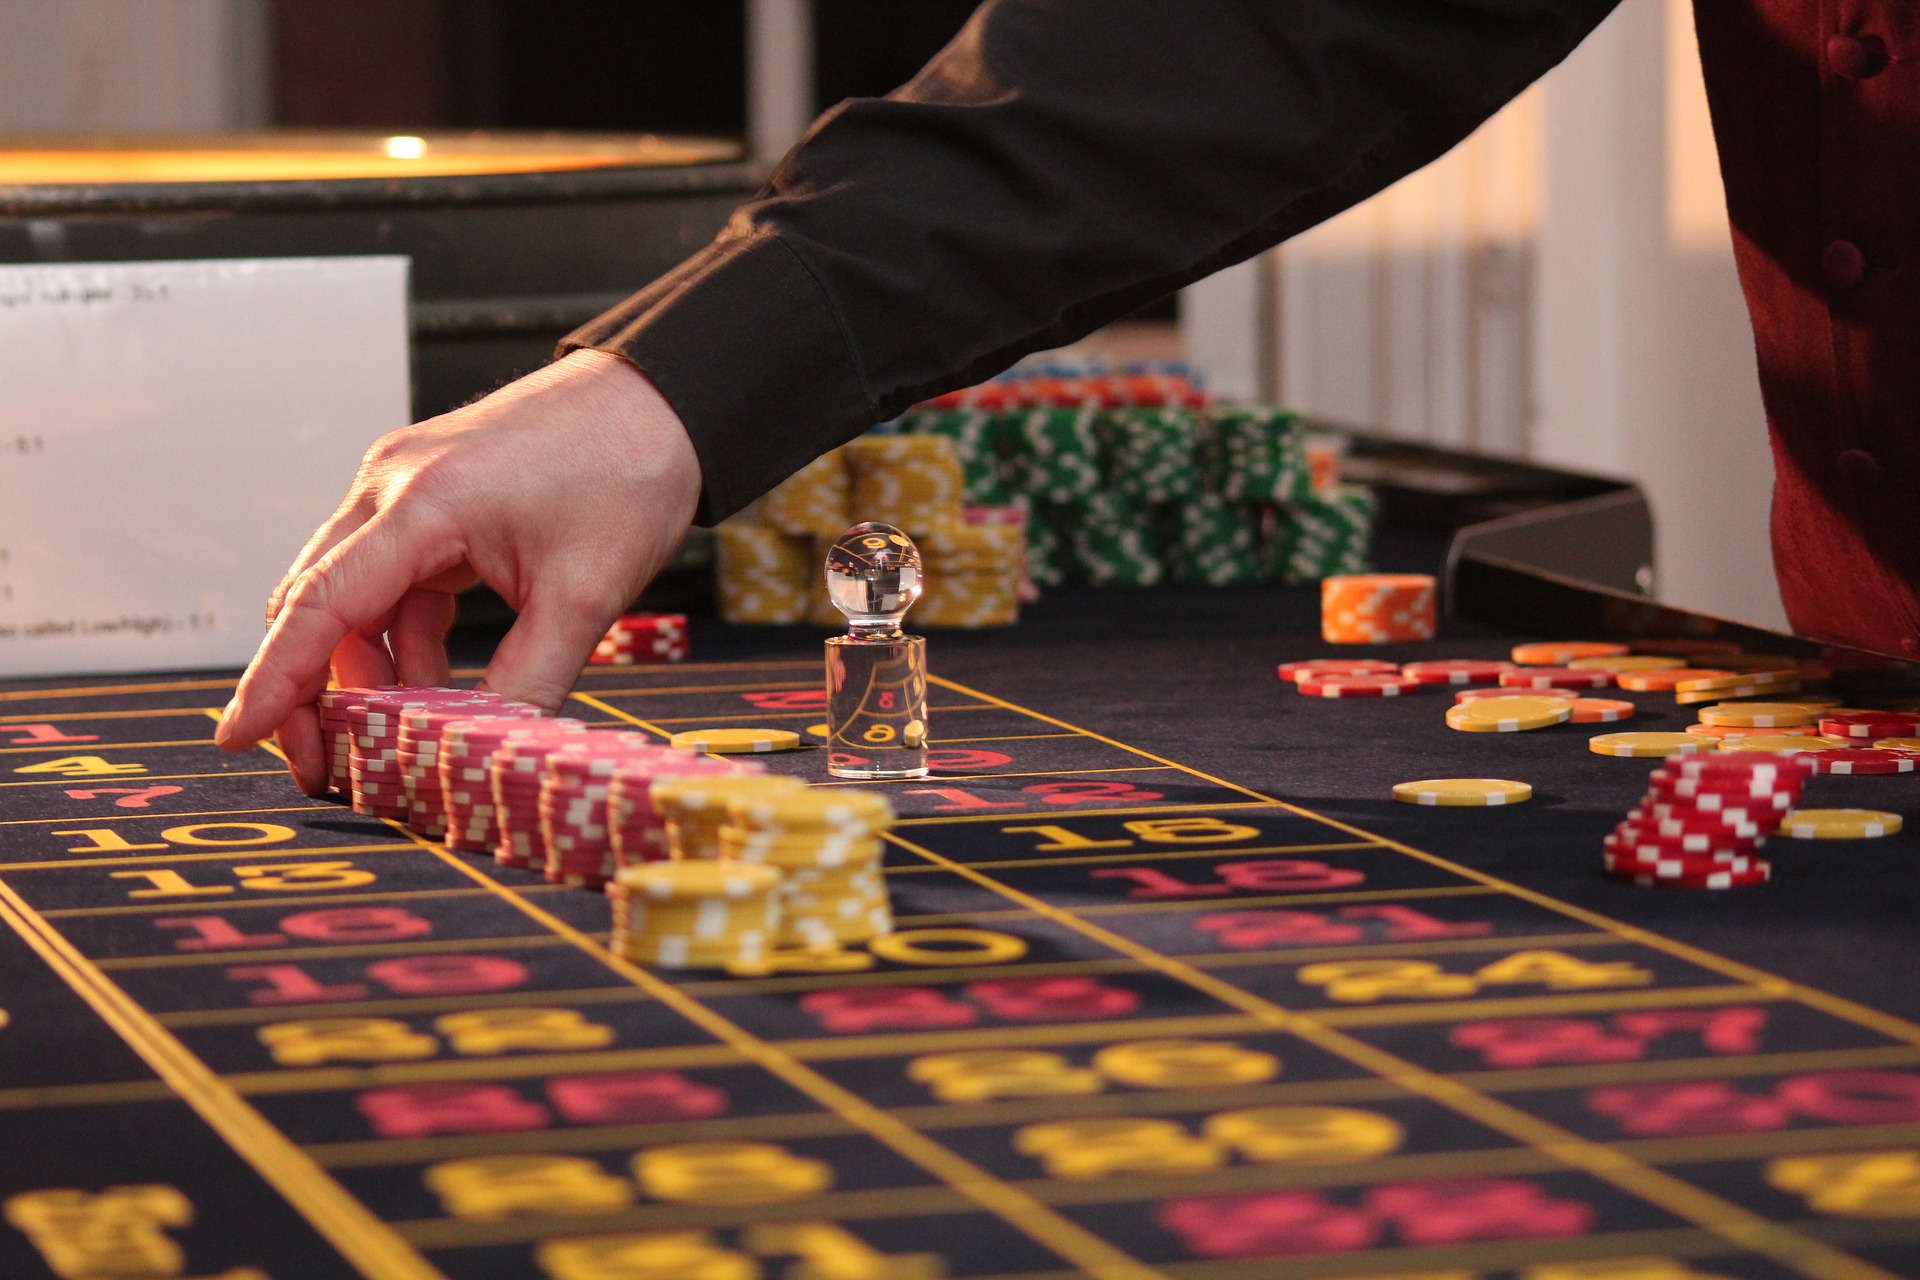 Stort fokus på casinoaktier när Macaus spelintäkter ökar. Under förra veckan kunde vi ta del av rapporter om att Macau, också känt som Orientens Monte Carlo, går bättre än på många år.